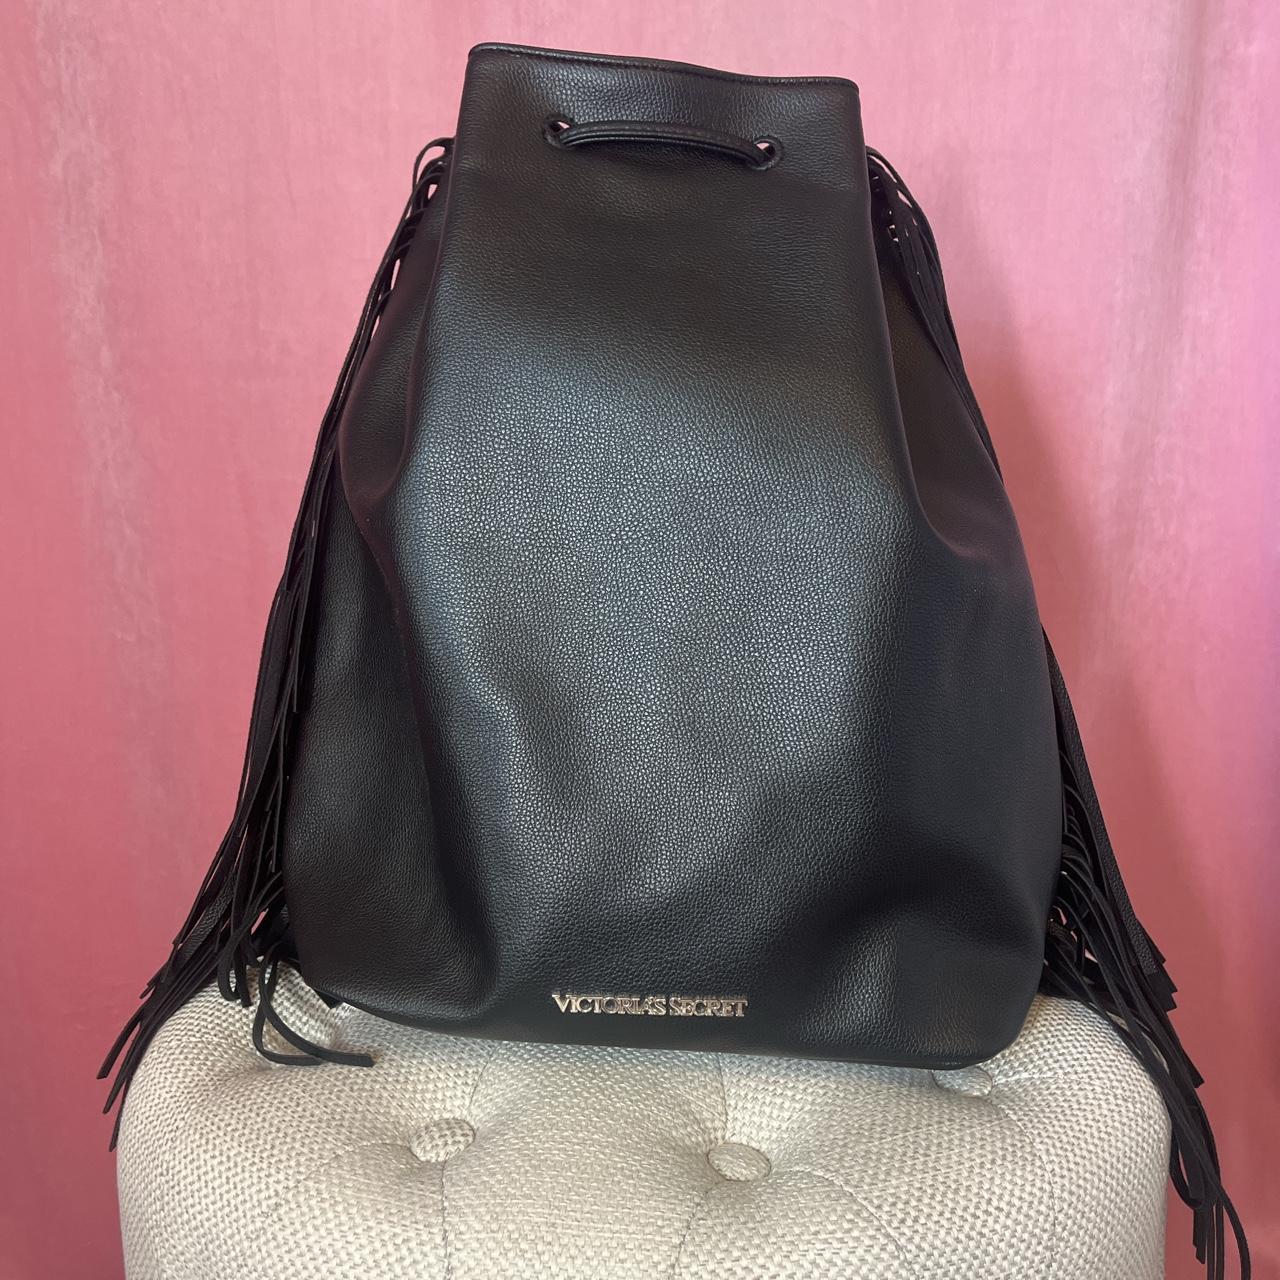 Victoria's Secret Women's Leather Bag